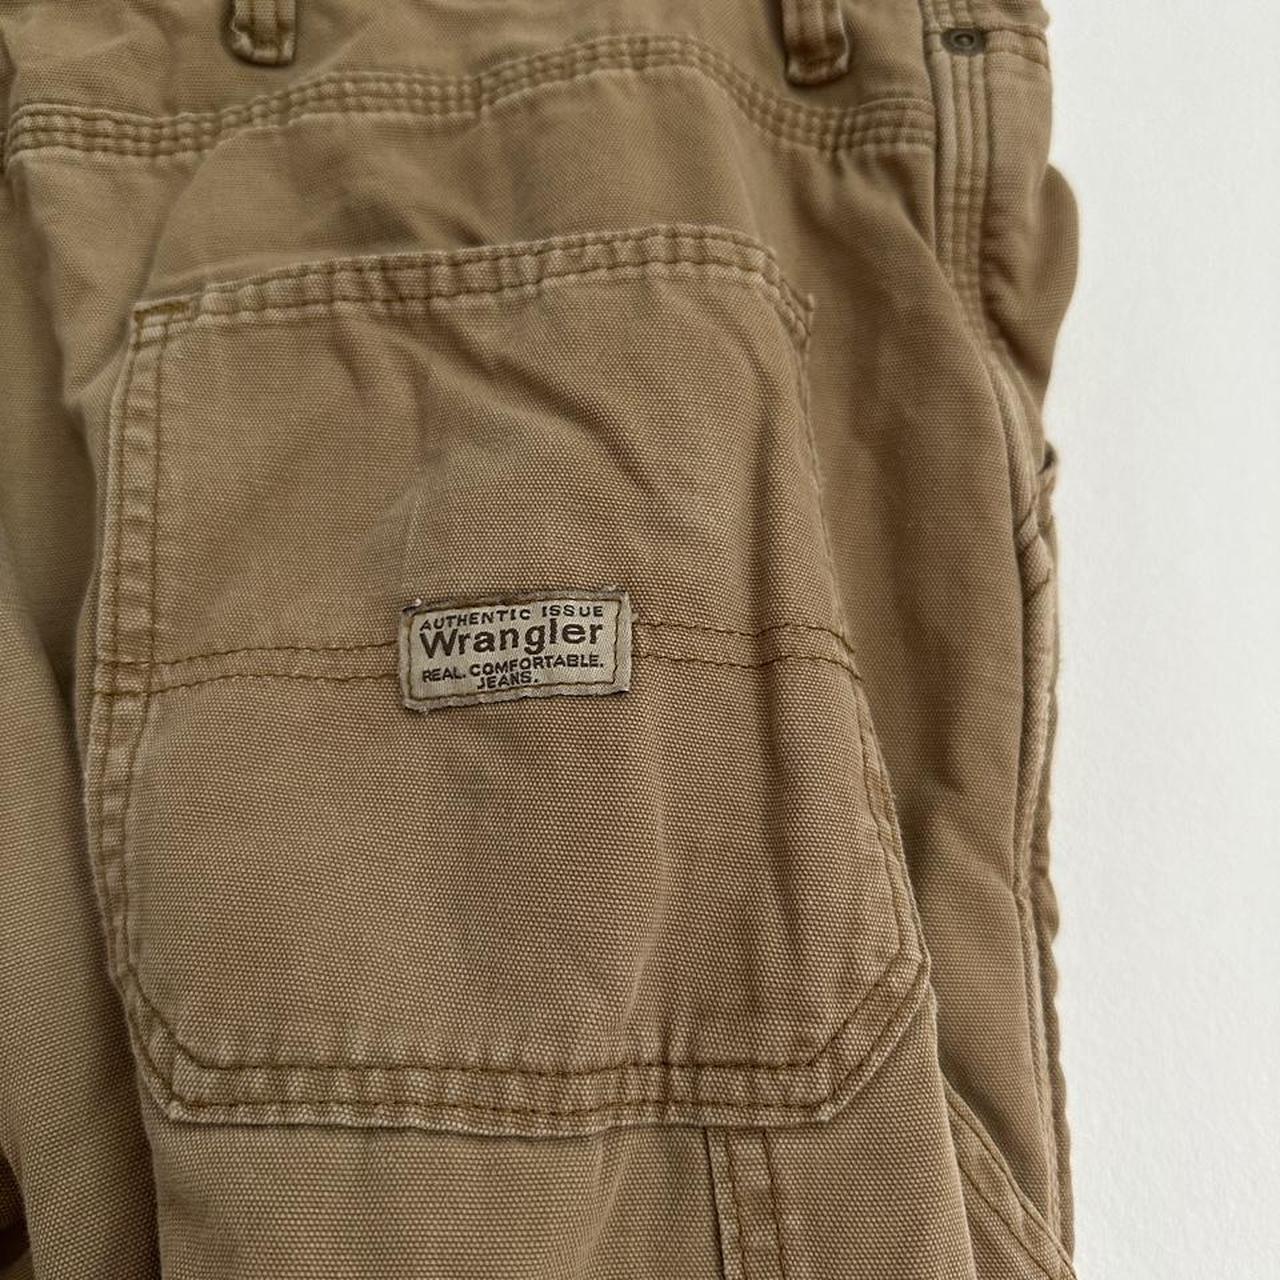 Wrangler fleece lined cargo pants 36 x 30 - Depop